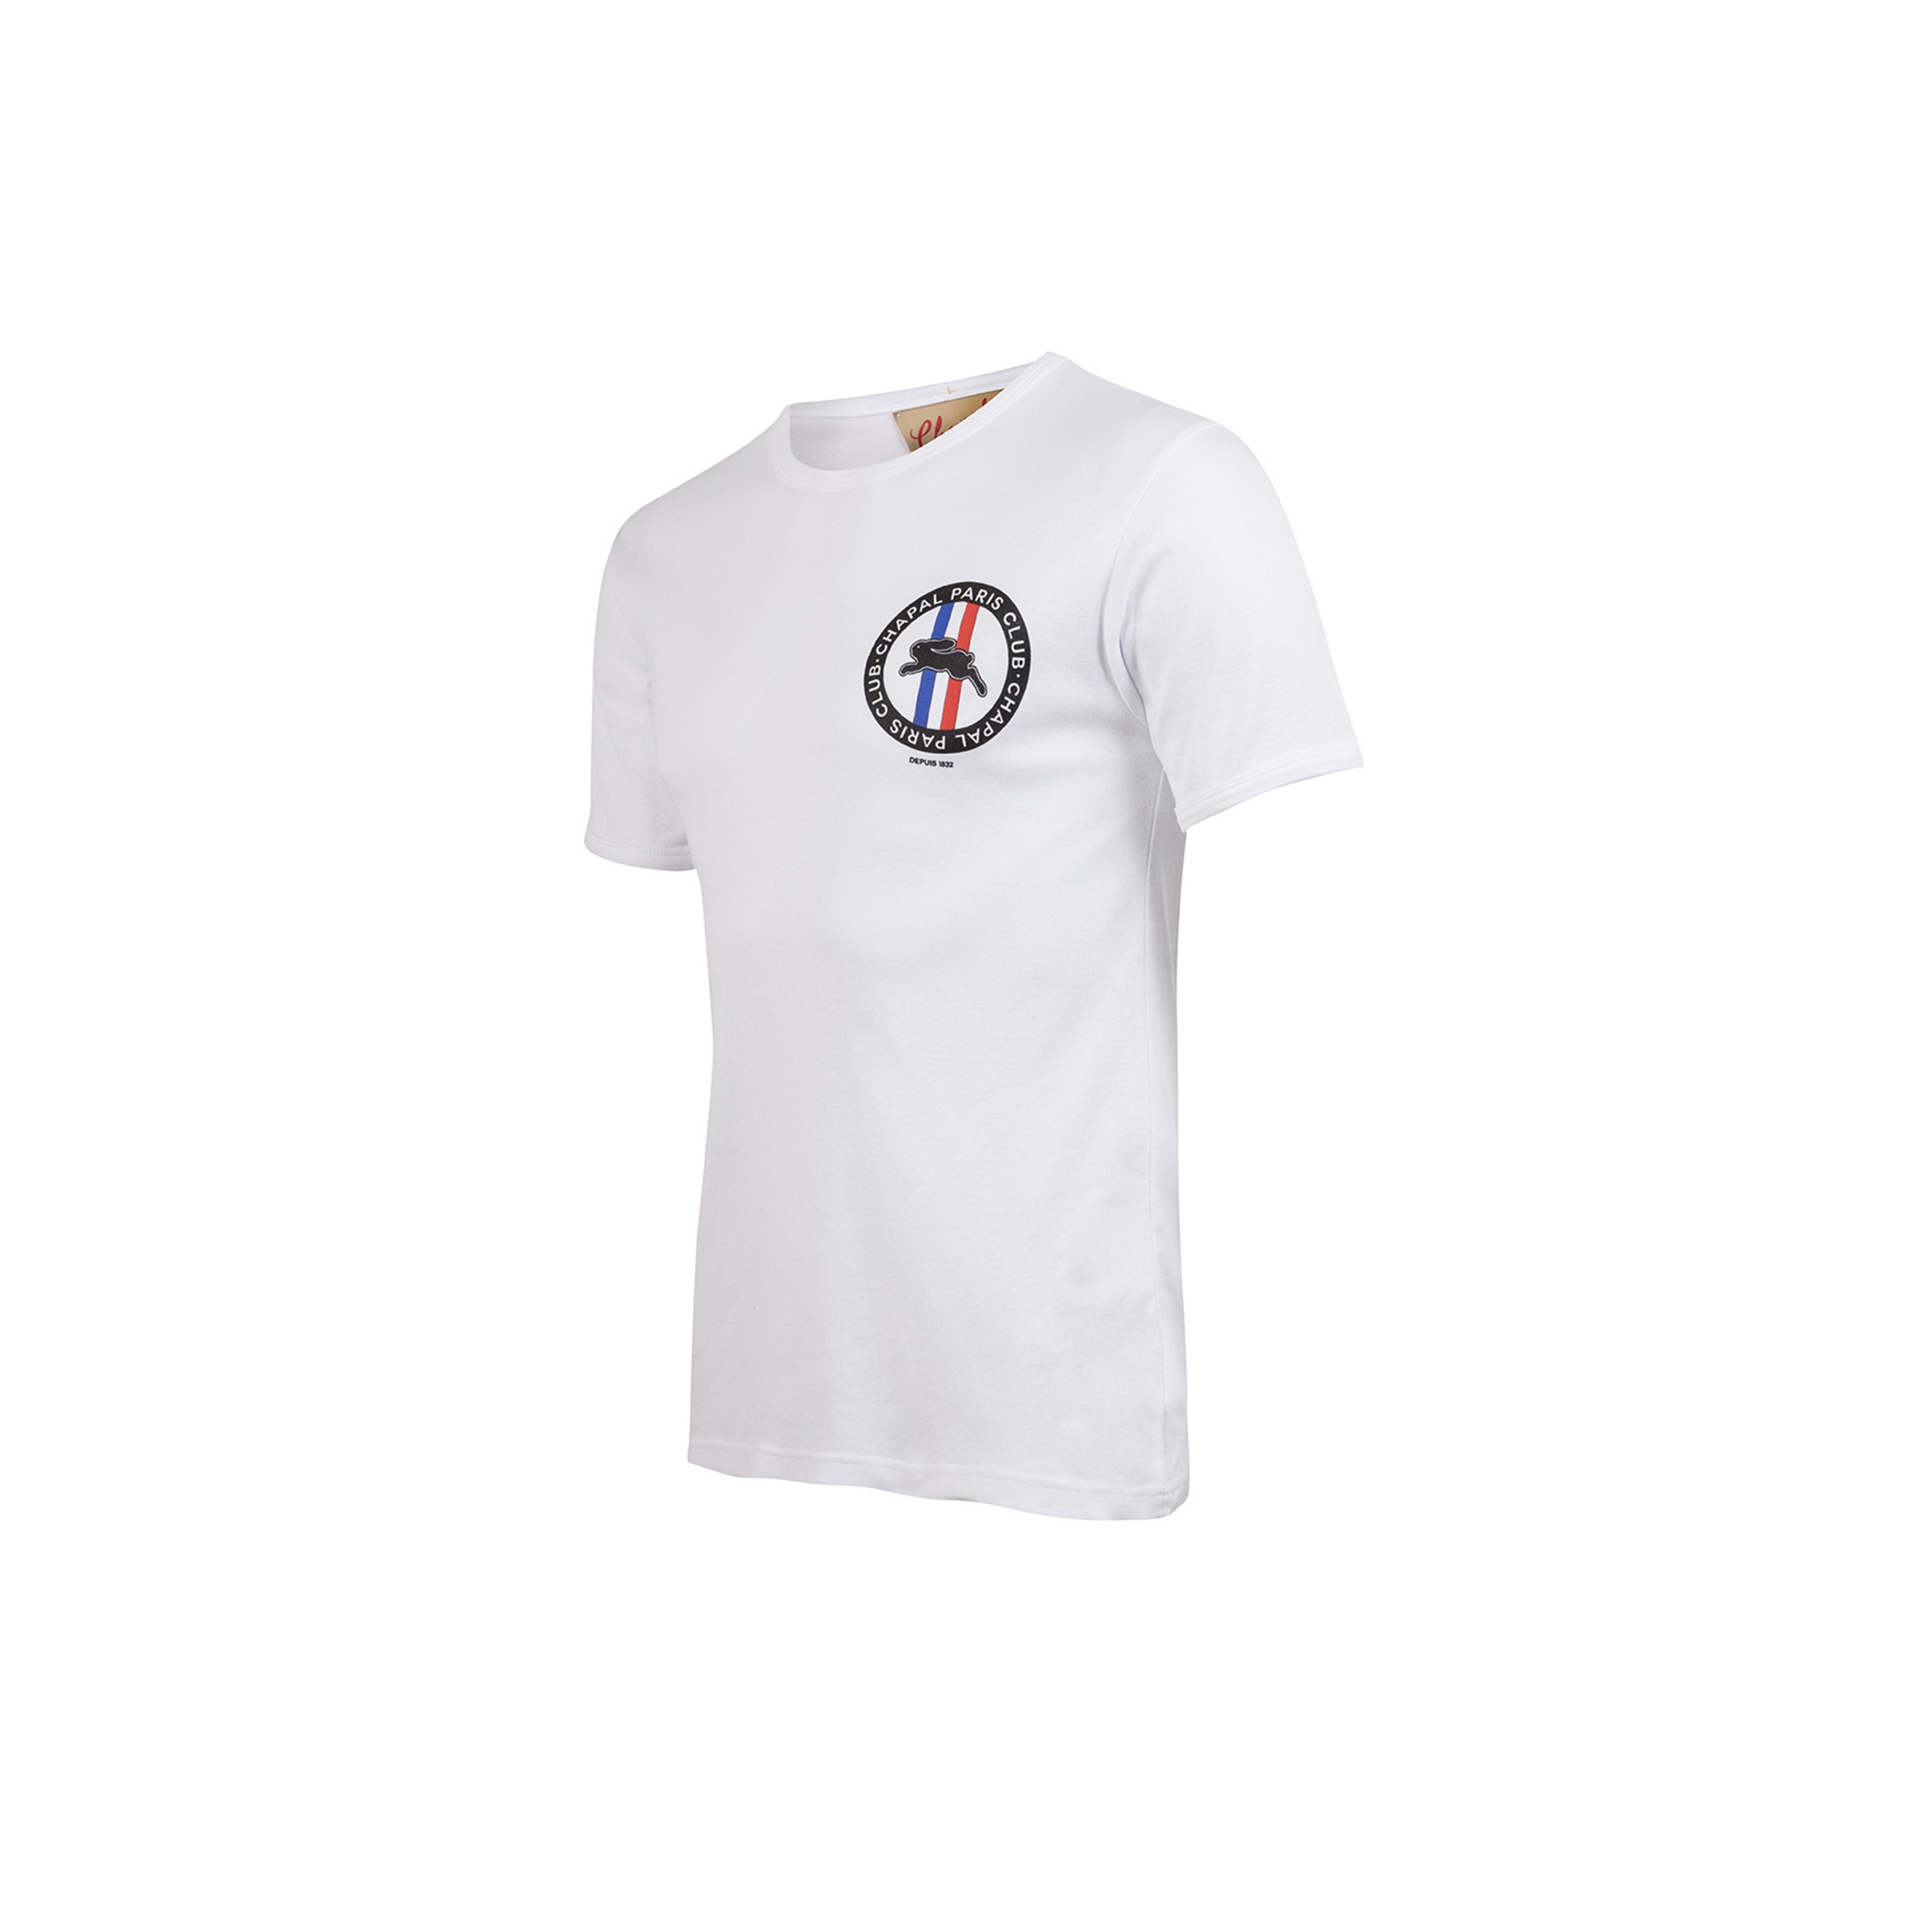 T-shirt Paris Club - Jersey de coton - Couleur blanc